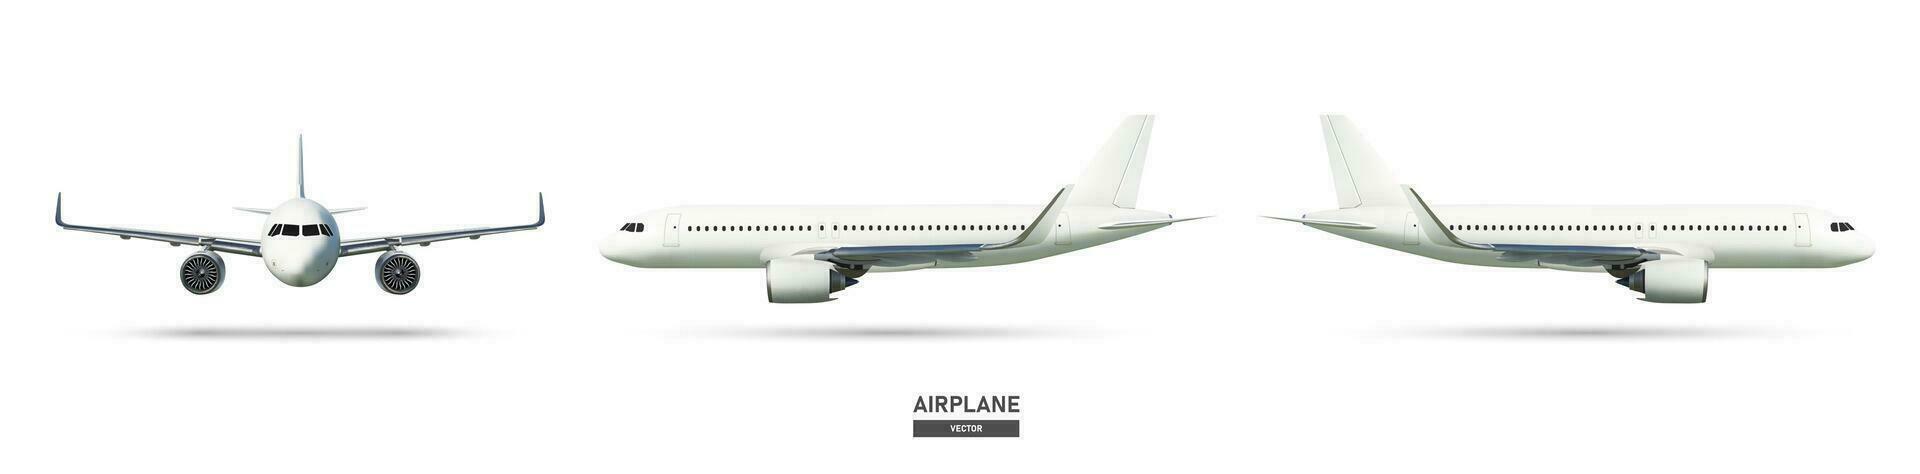 aeronave ou avião em lado Visão e frente visualizar, vetor ilustração